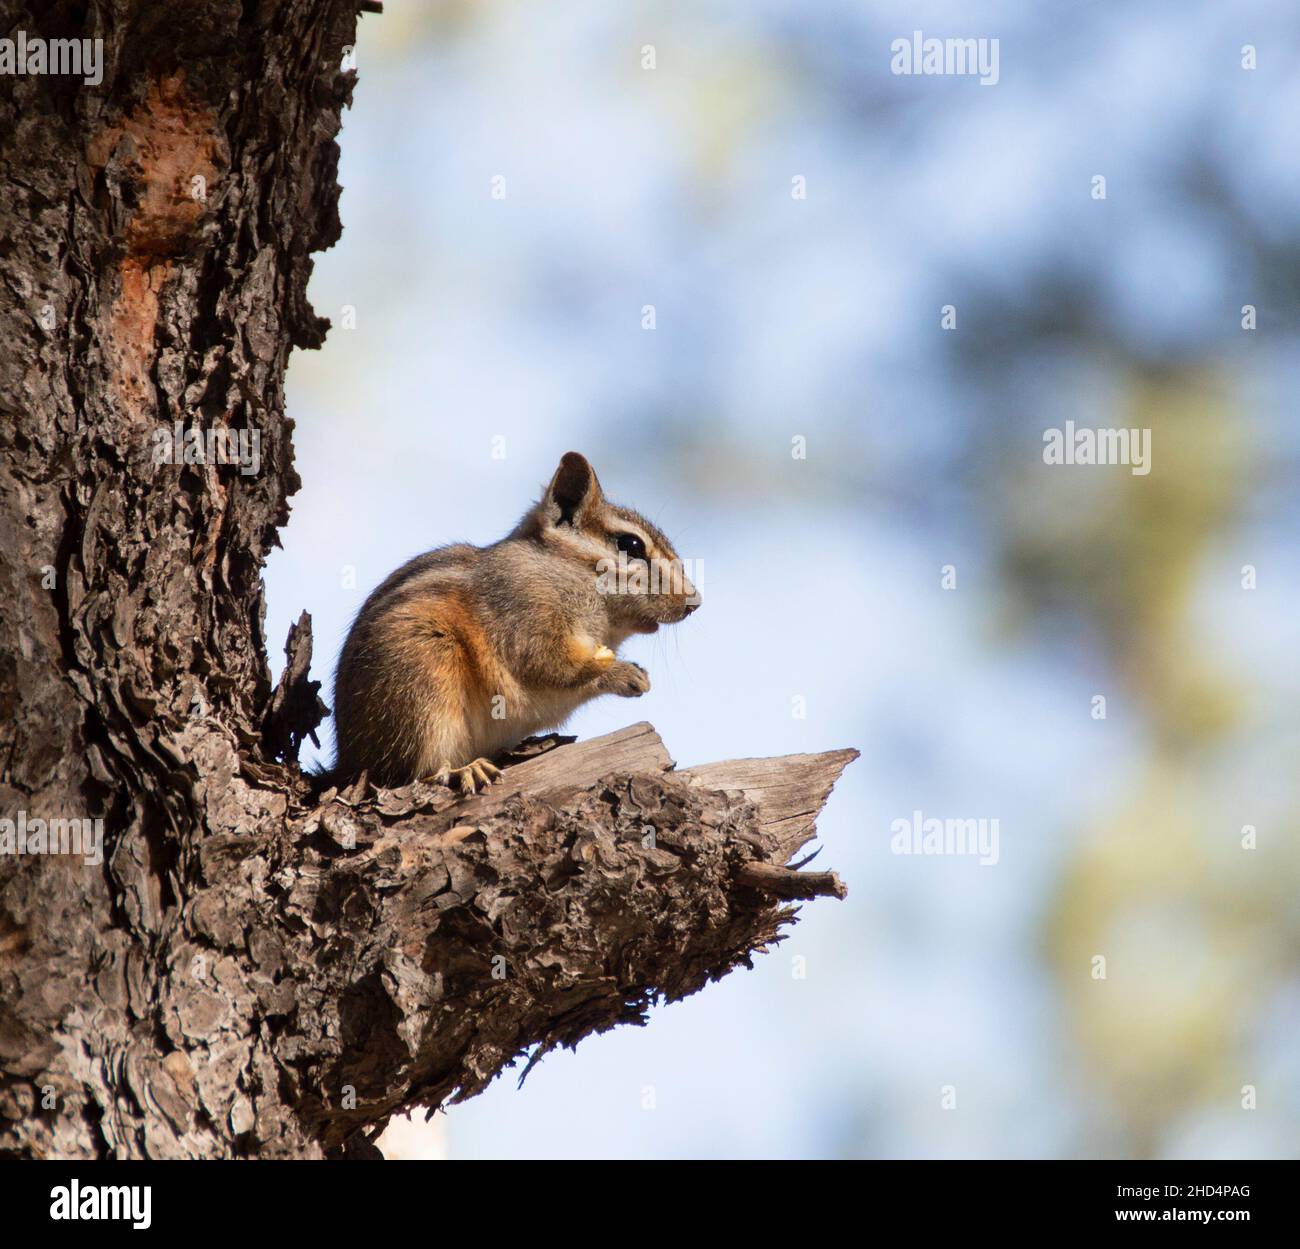 Nahaufnahme eines niedlichen Chipmunks, der auf einem umgestürzten Baum sitzt, mit verschwommenem Hintergrund Stockfoto